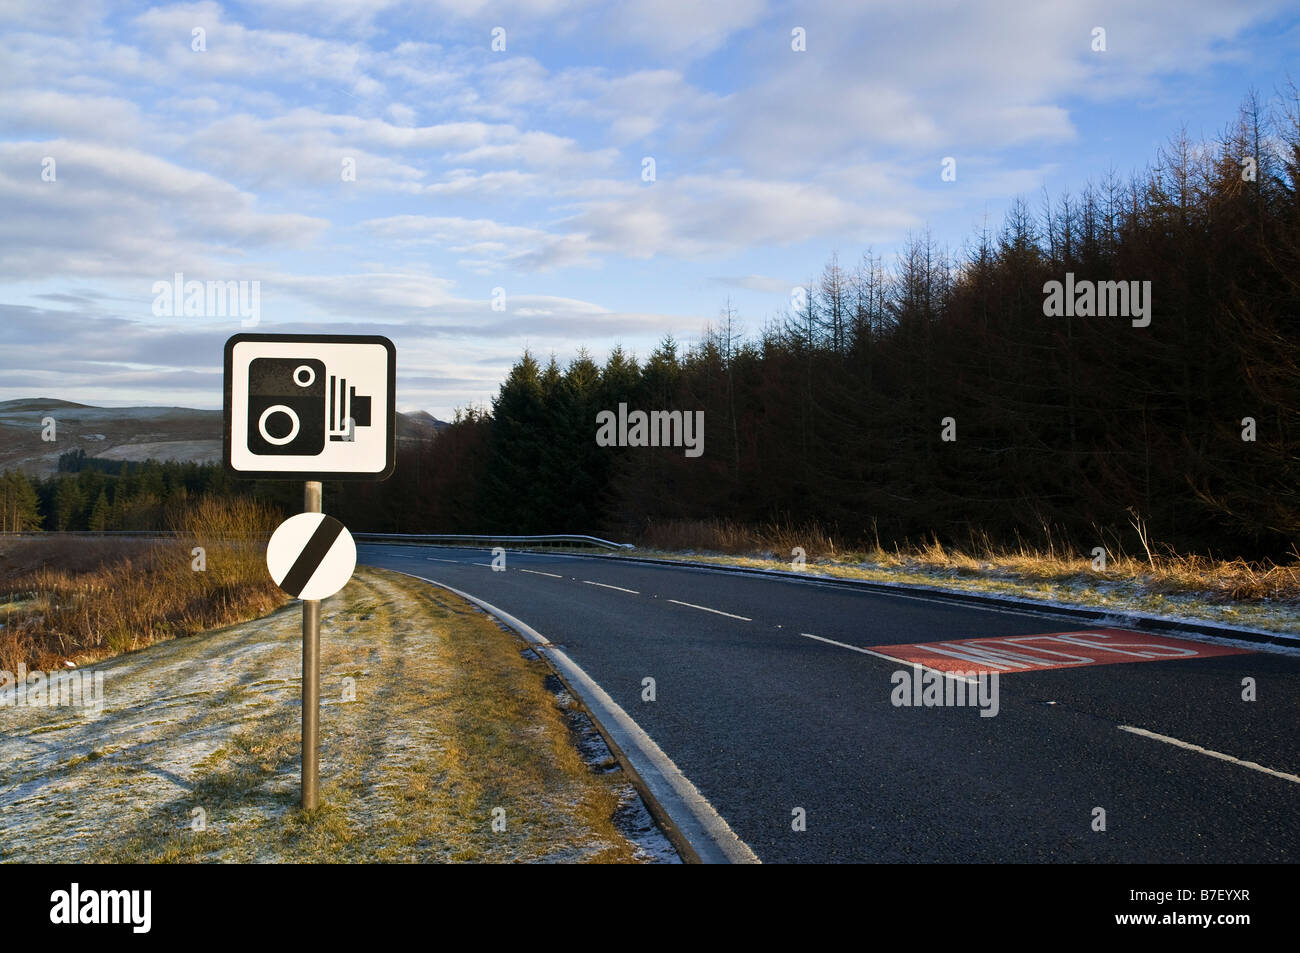 dh ROADSIGN UK vitesse de circulation caméra avertissement panneau de signalisation route vide A68 frontières écossaises Banque D'Images